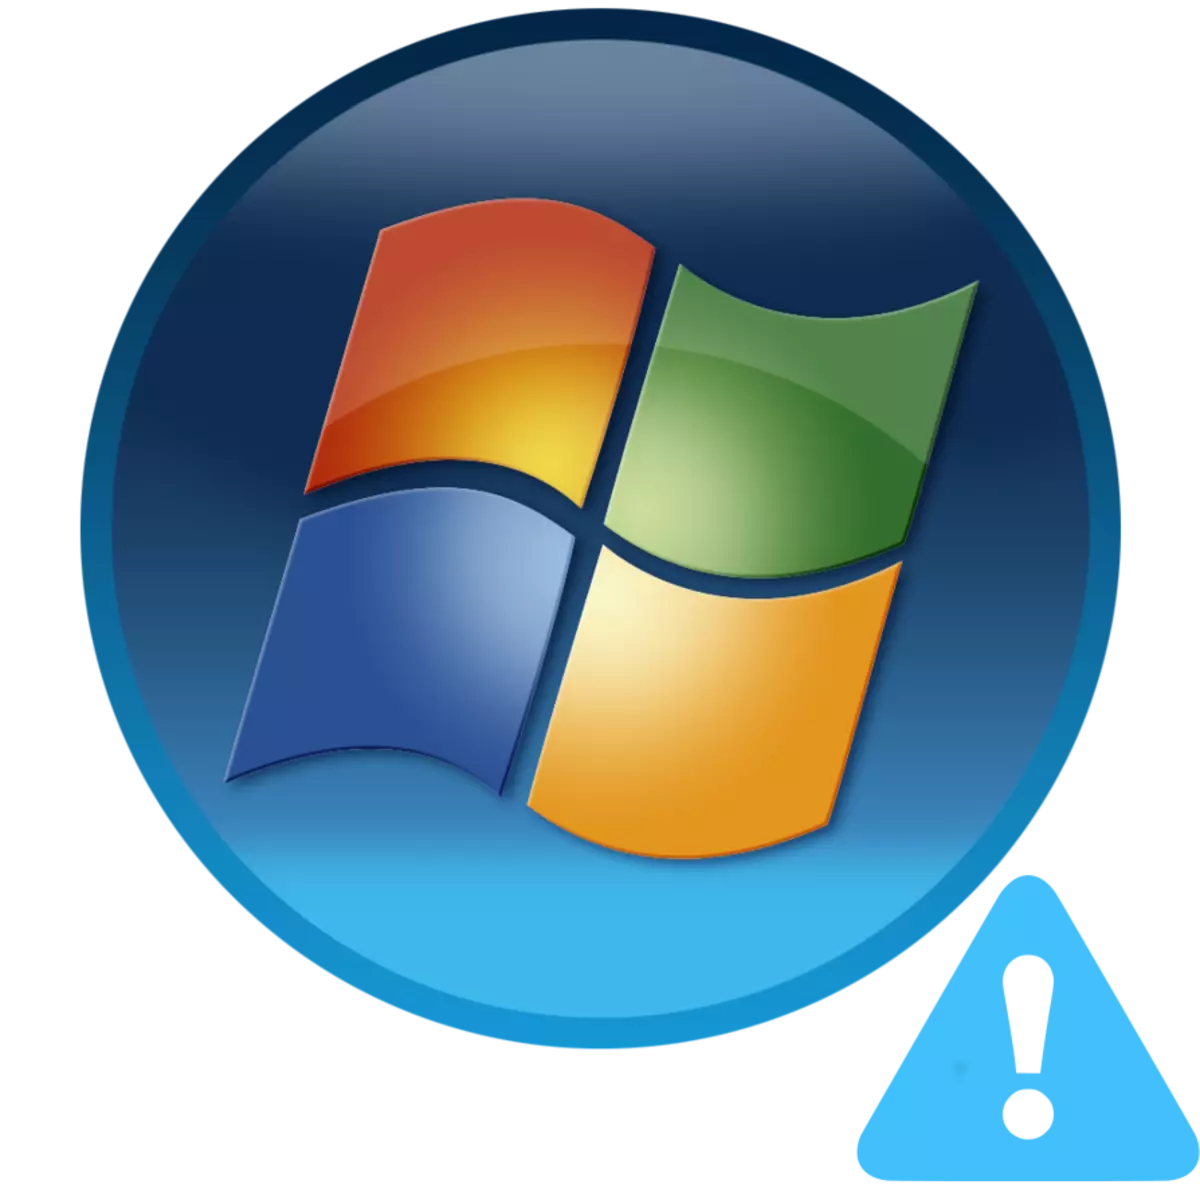 Boot BOOTMGR nedostaje u sustavu Windows 7